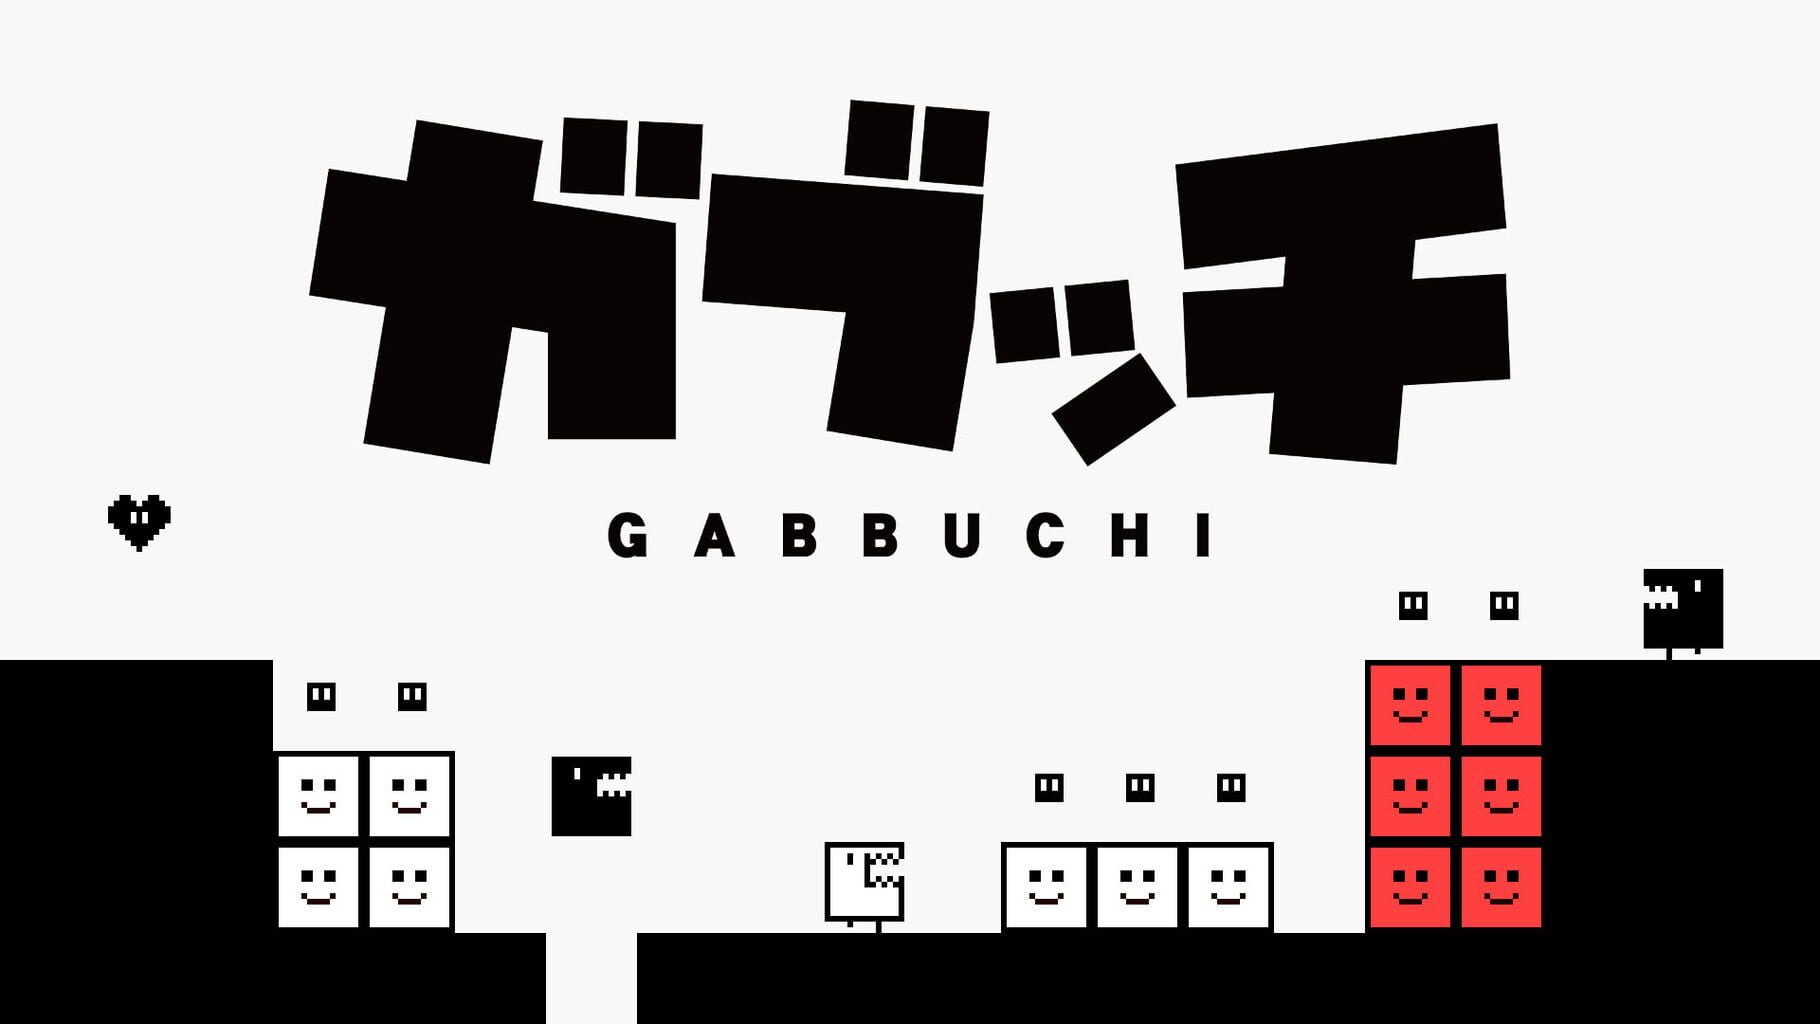 Gabbuchi artwork